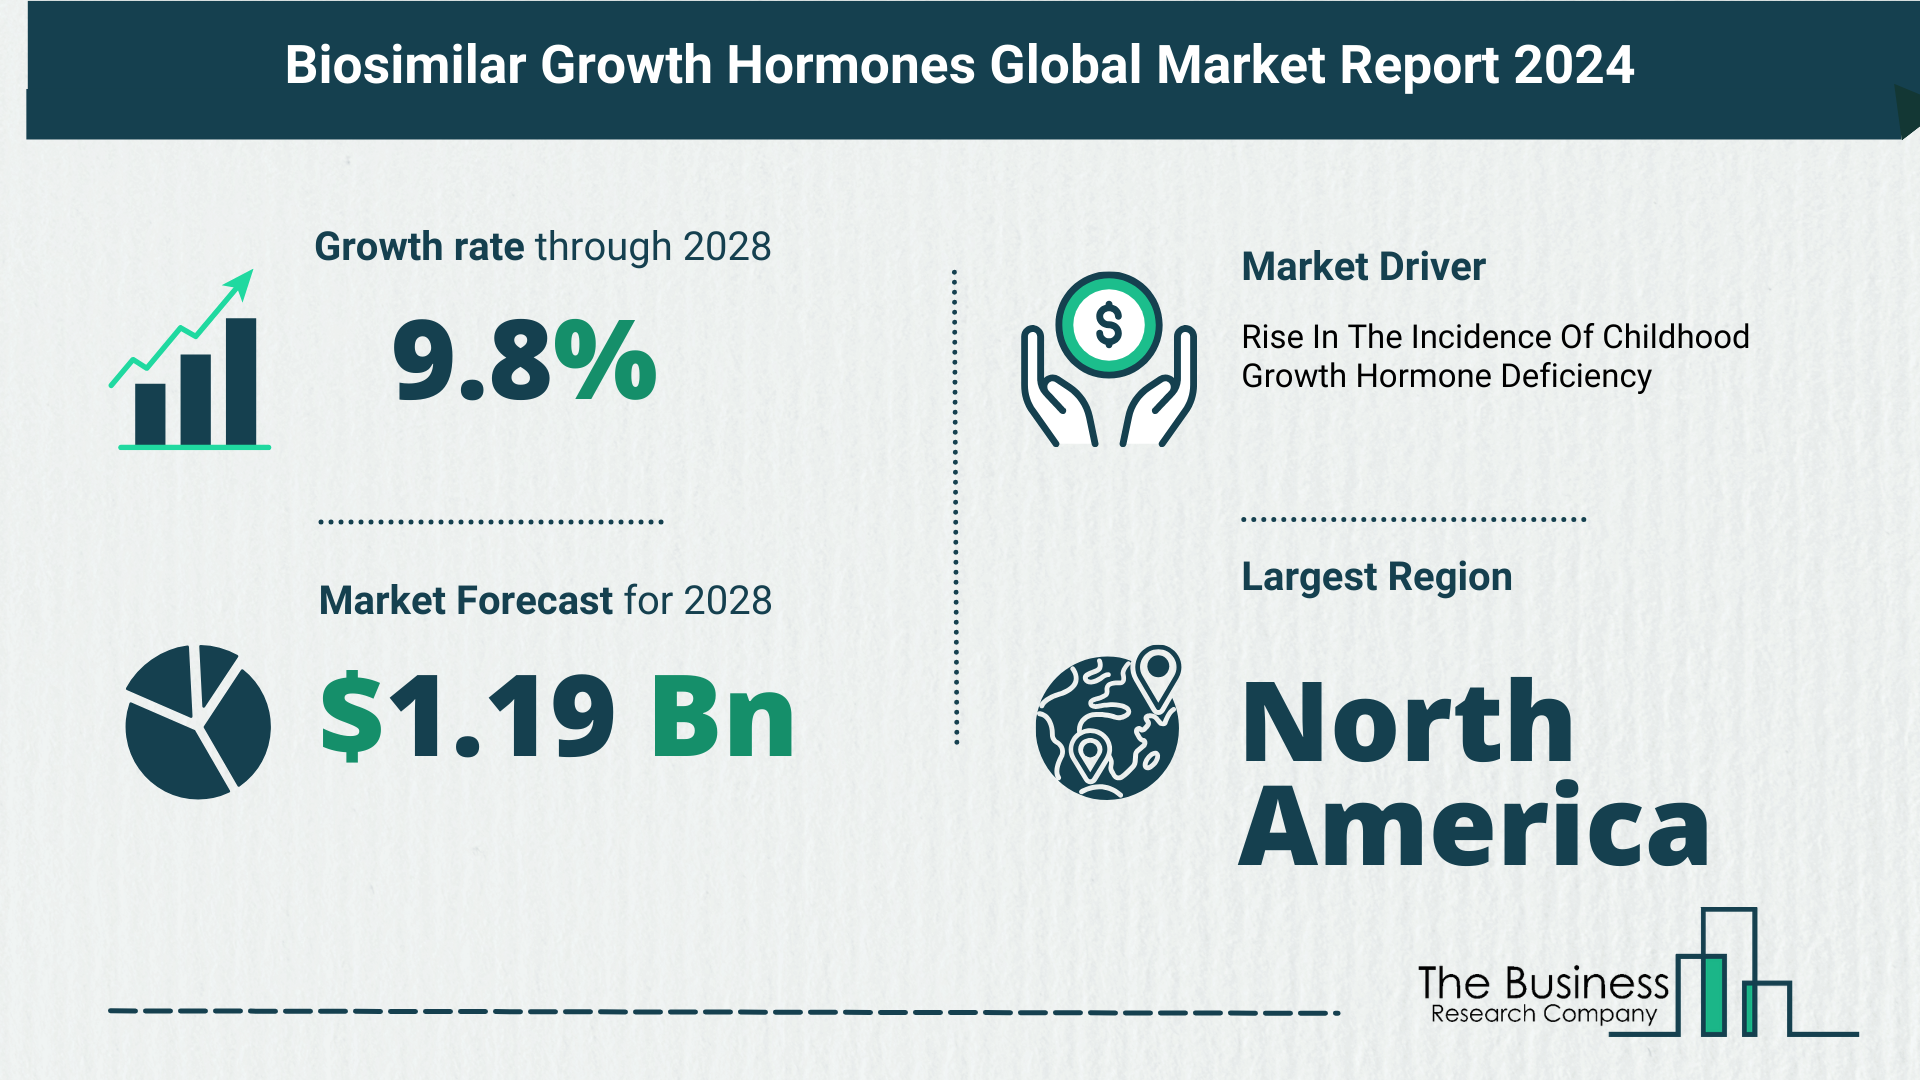 Global Biosimilar Growth Hormones Market Report 2024 – Top Market Trends And Opportunities